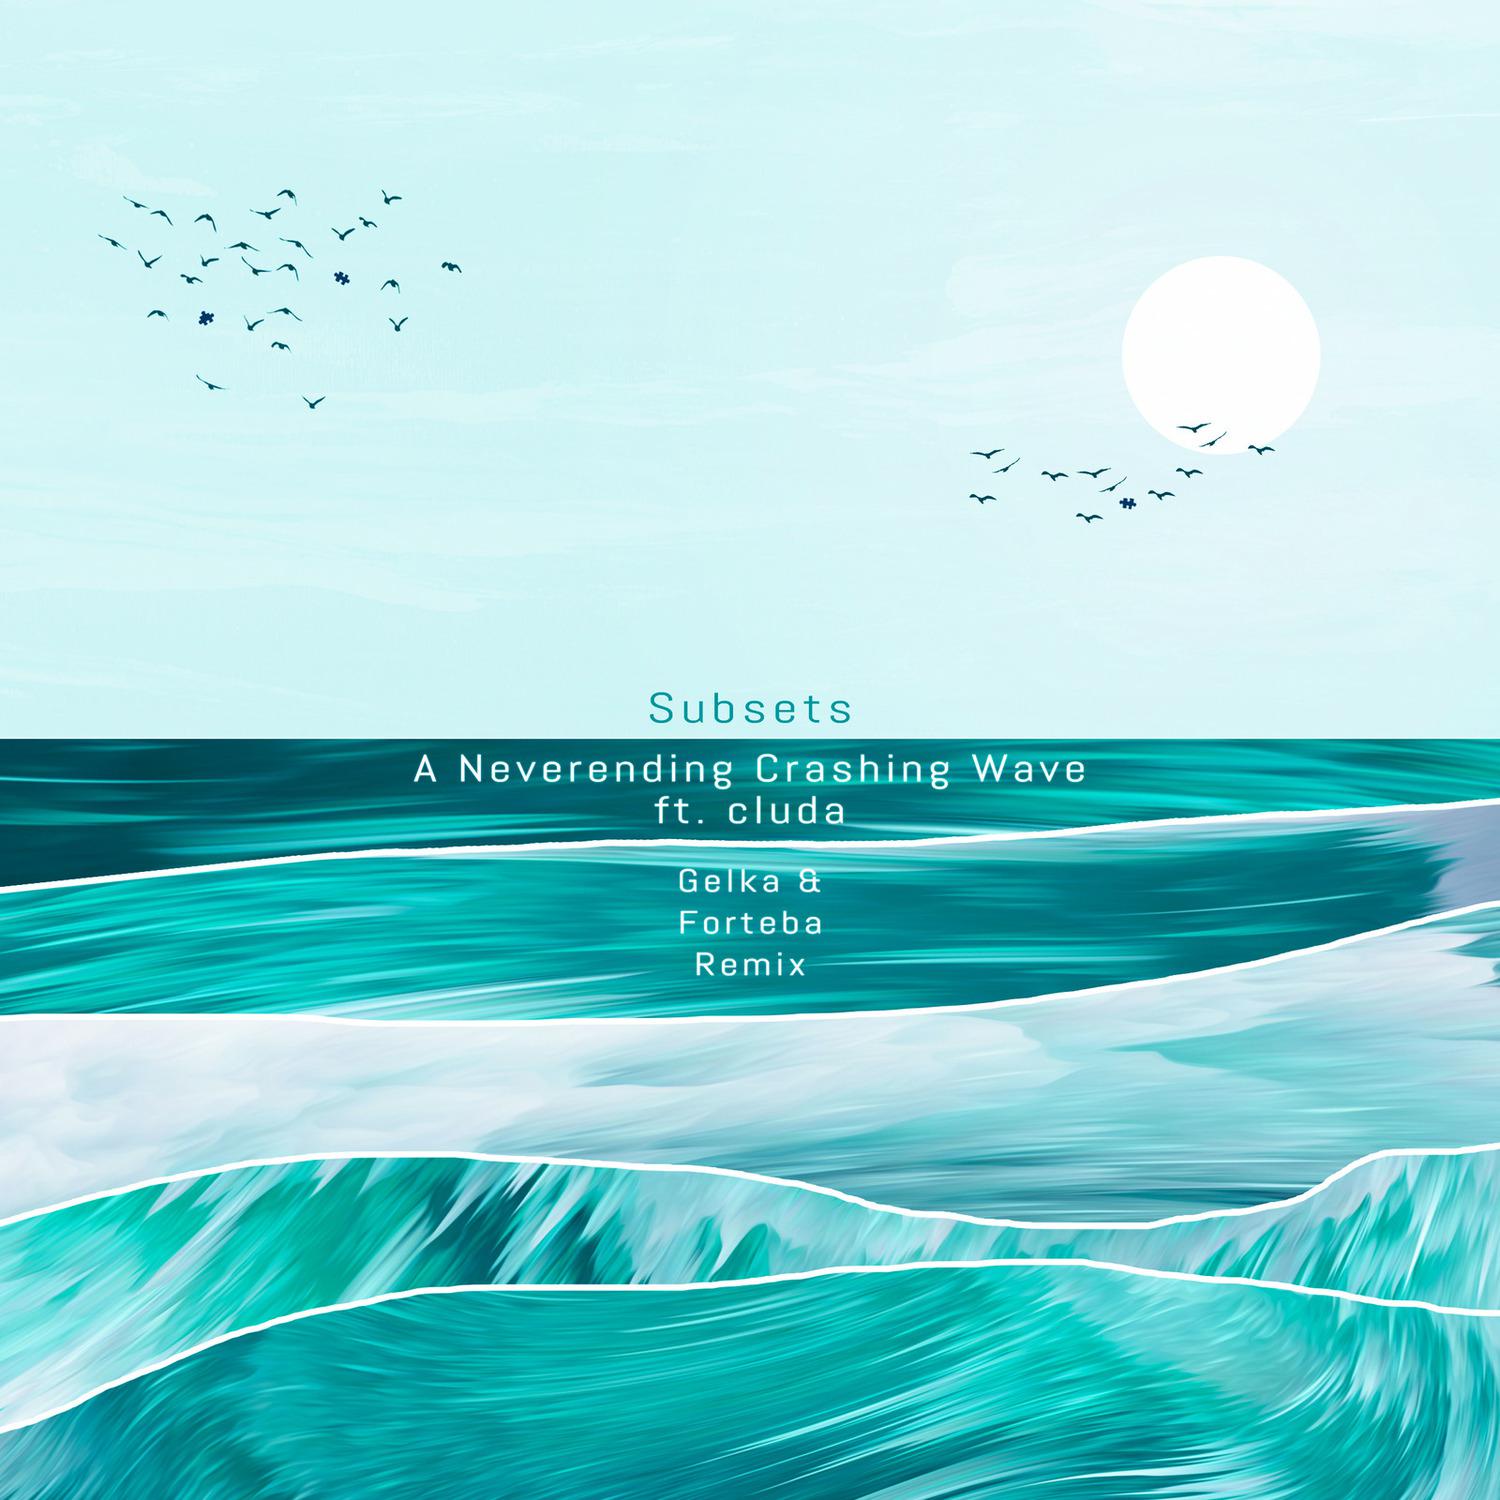 Subsets - A Neverending Crashing Wave [Gelka & Forteba Remix]